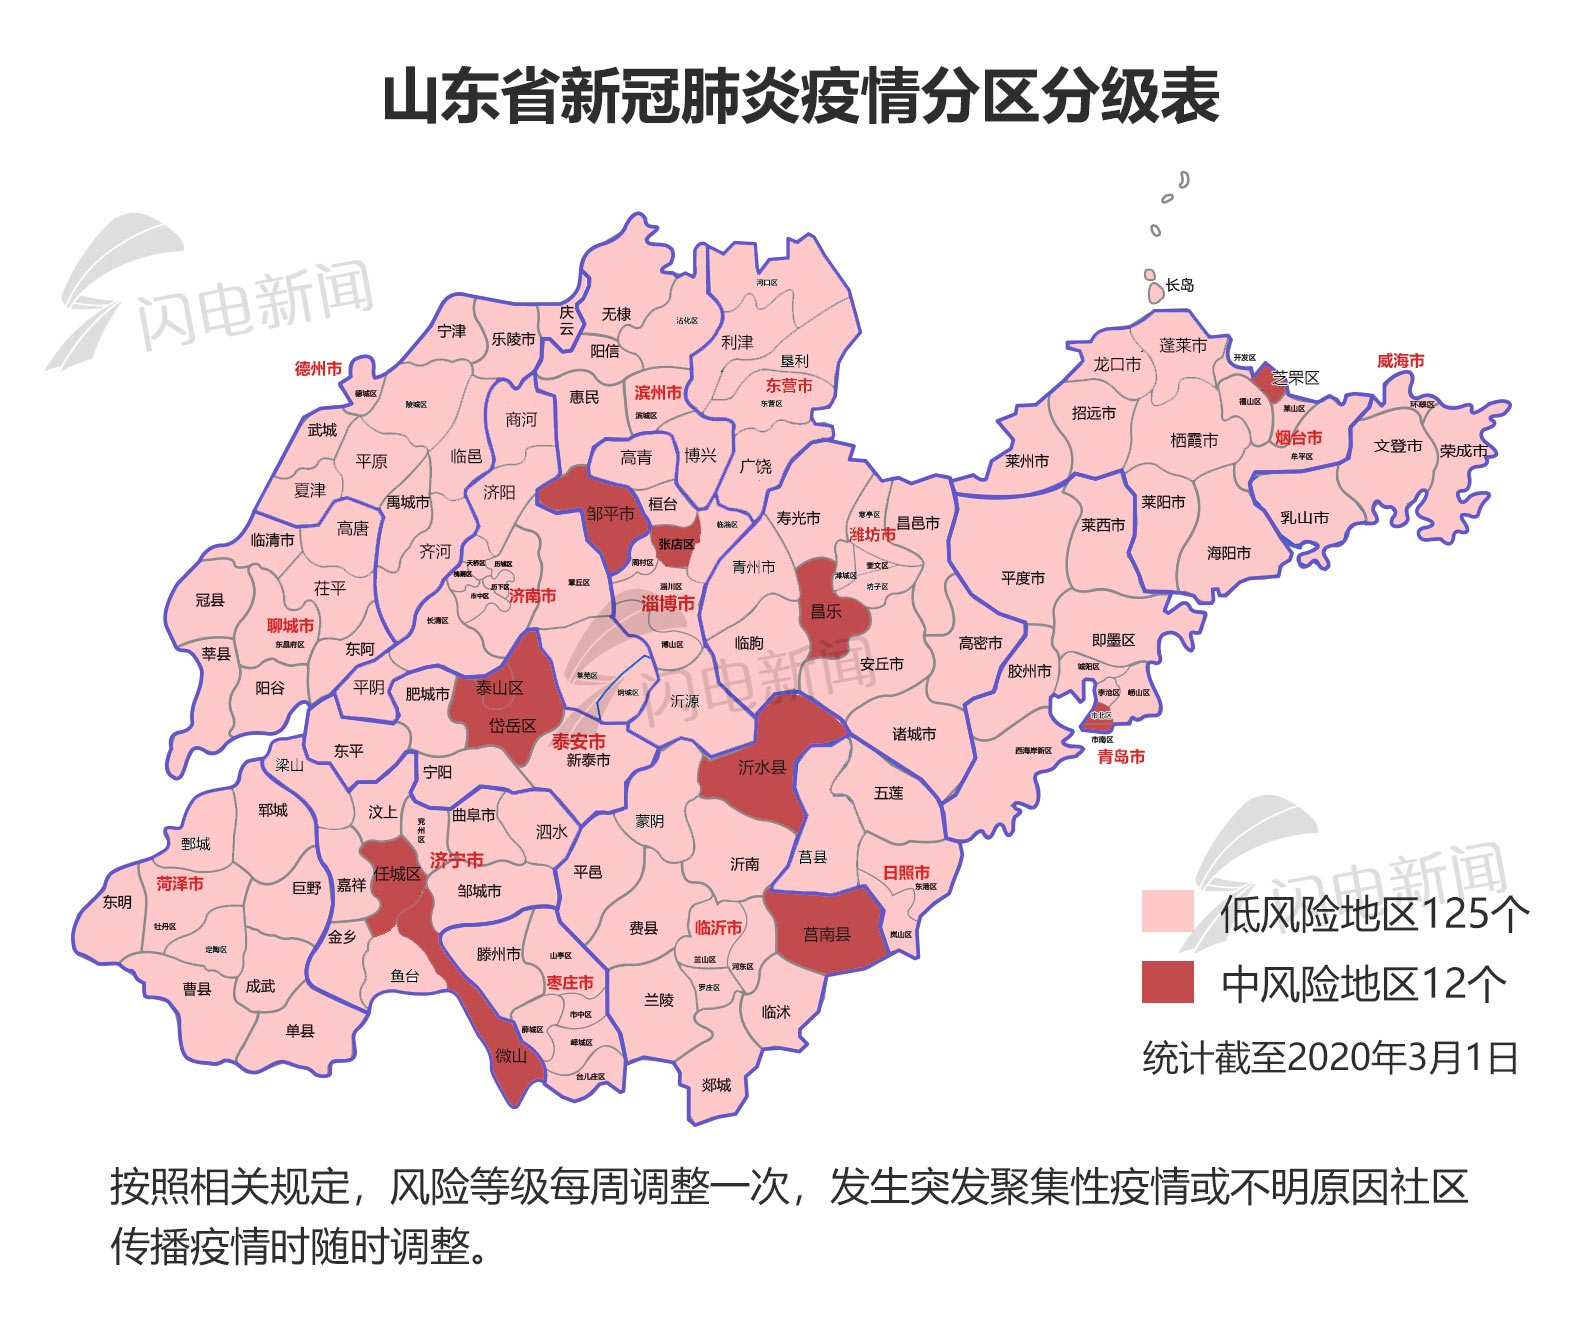 山东新冠肺炎疫情分区分级:125个县(市,区)为低风险地区